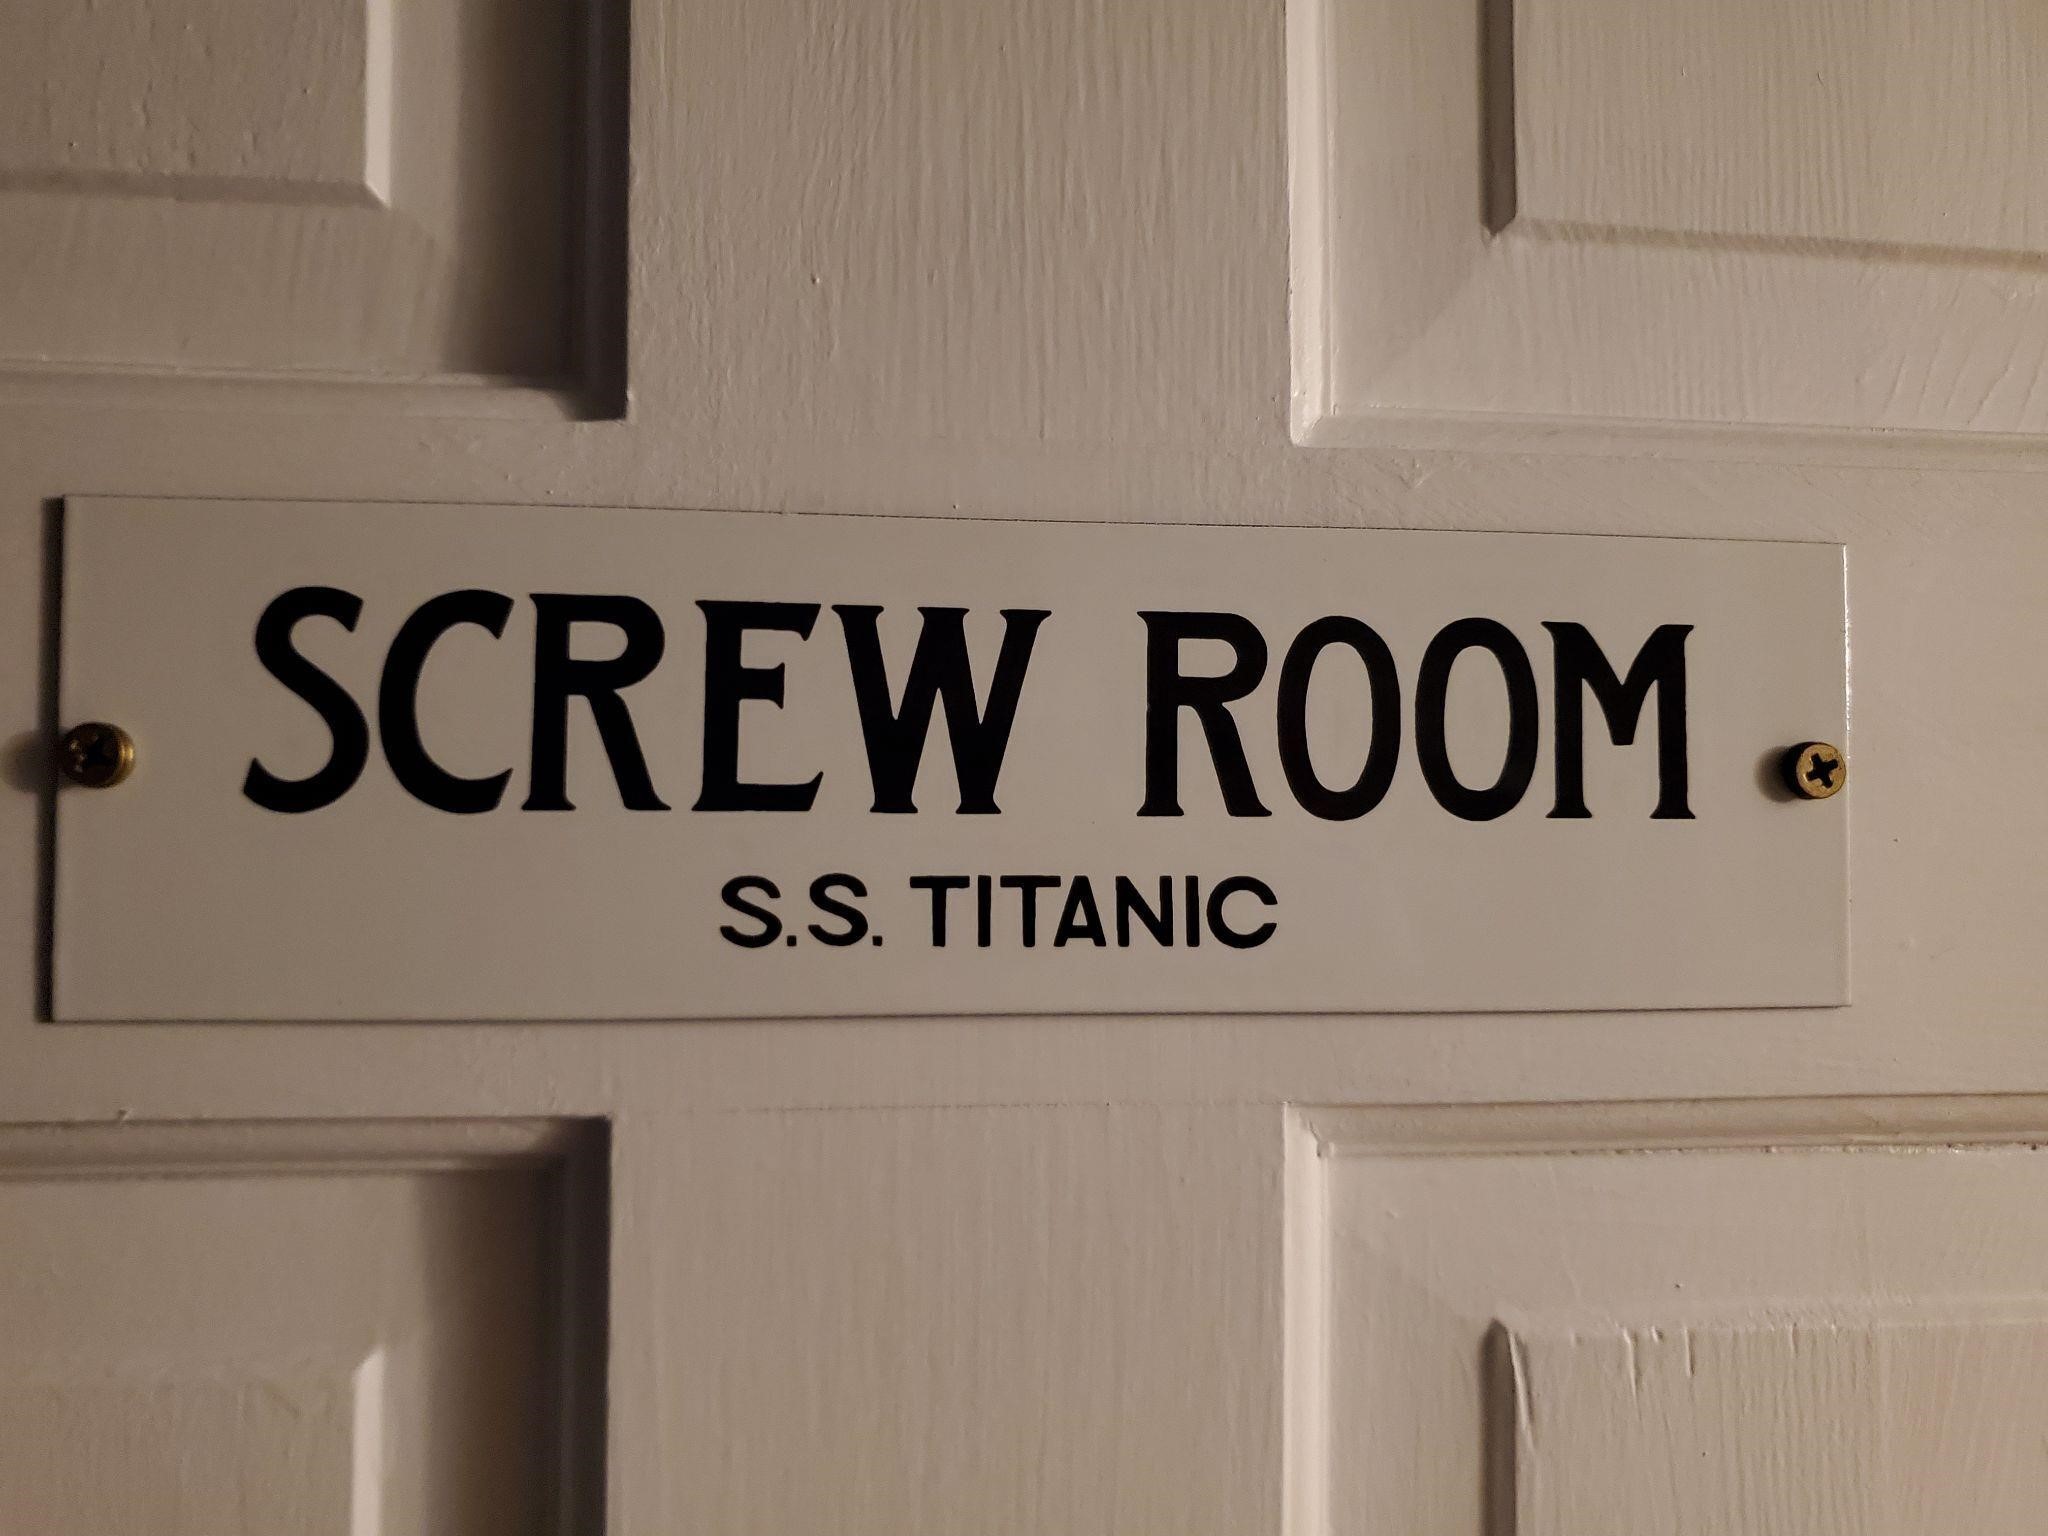 Screw Room door sign